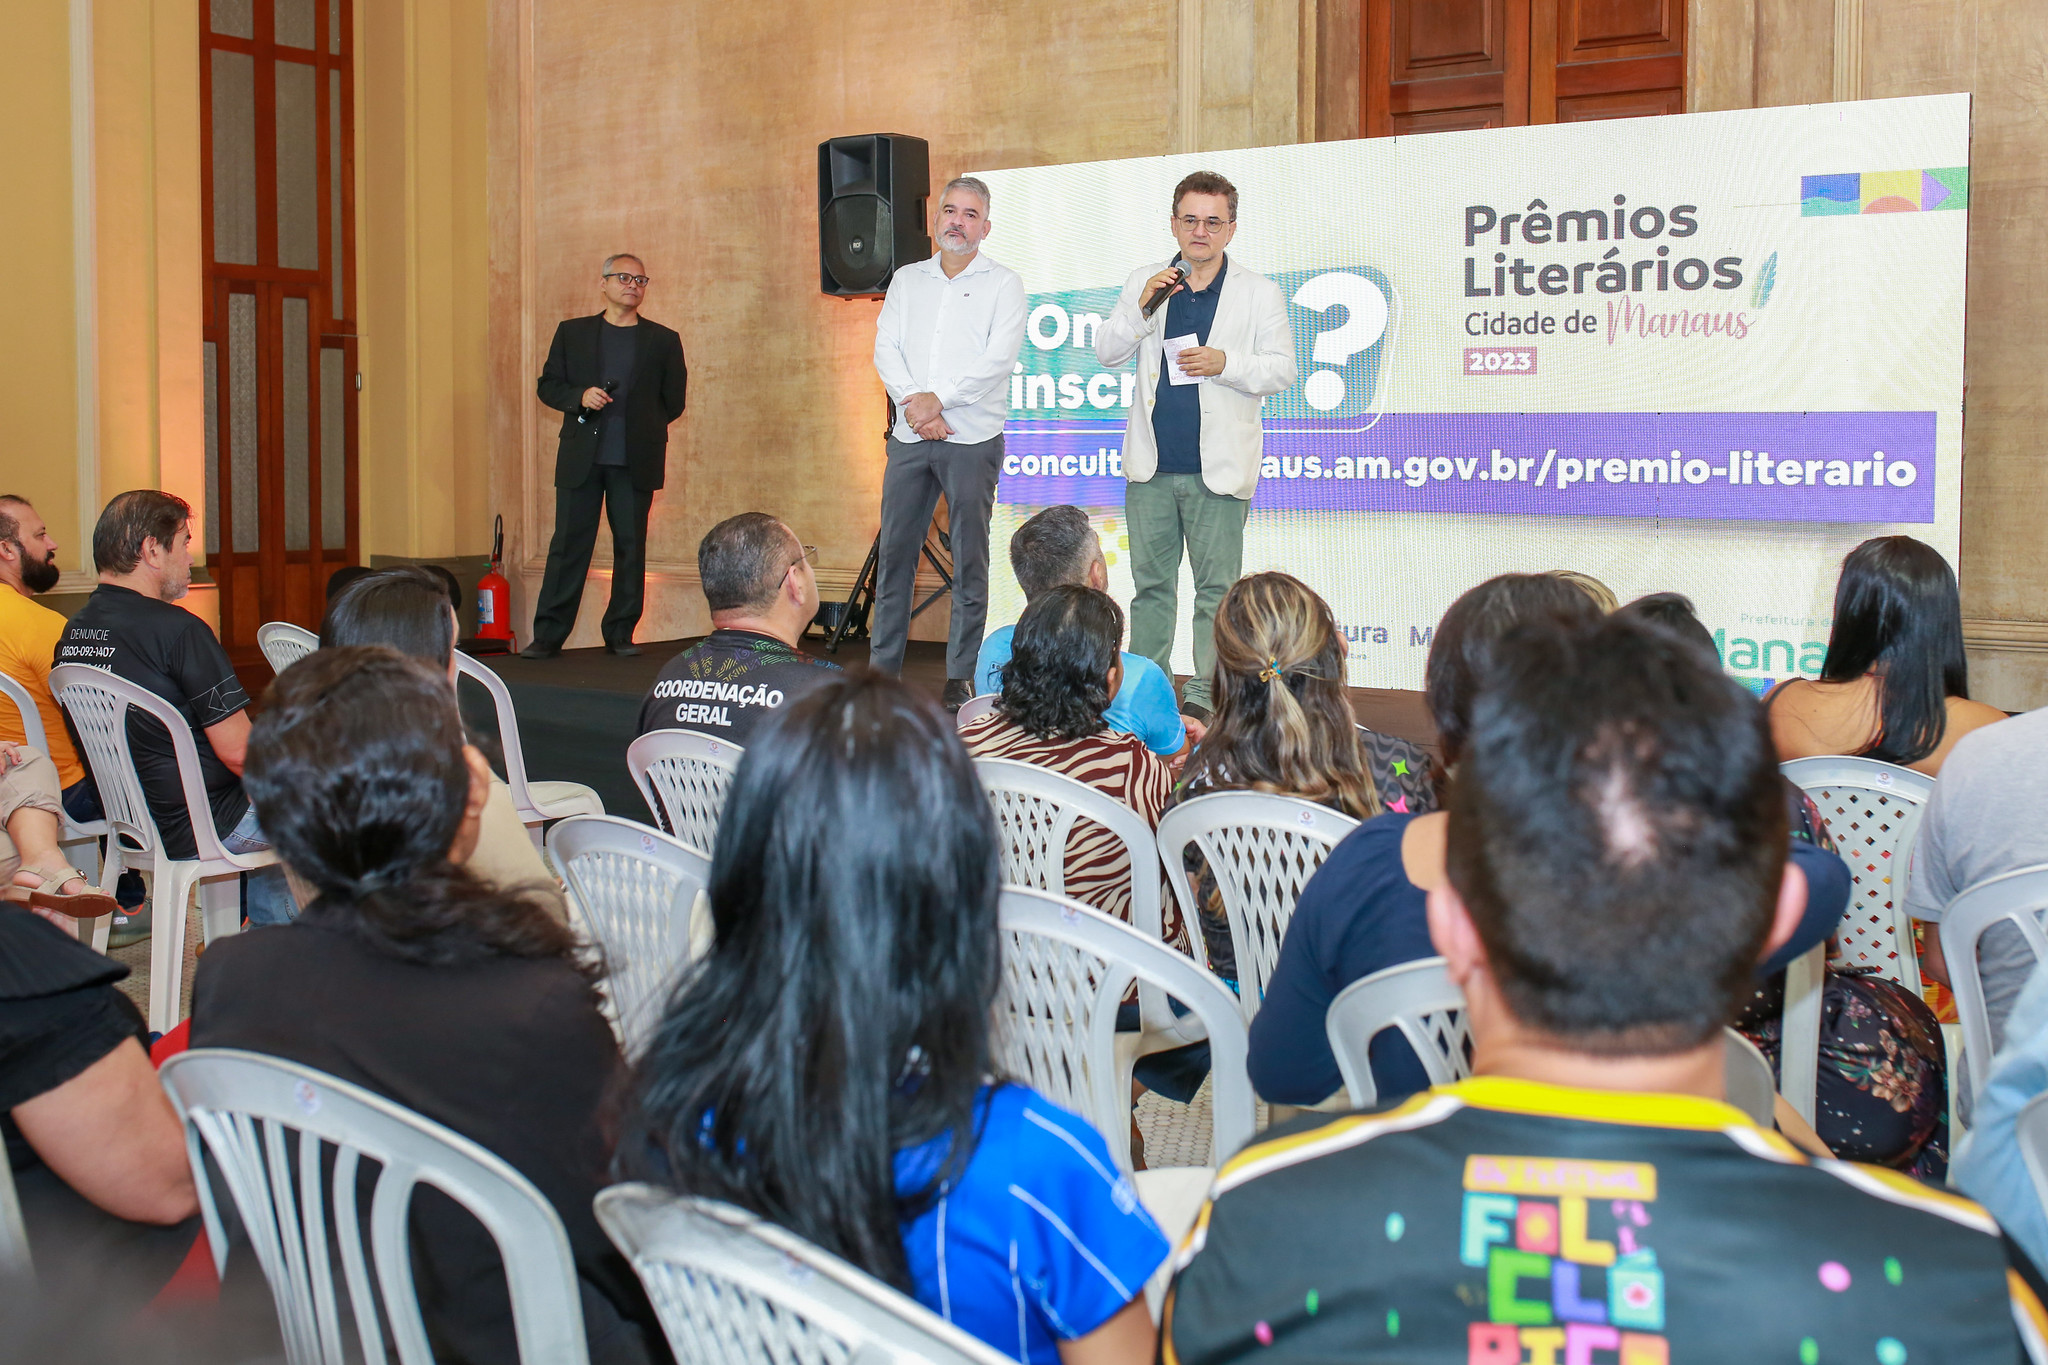 Prêmios Literários Cidade de Manaus 2023